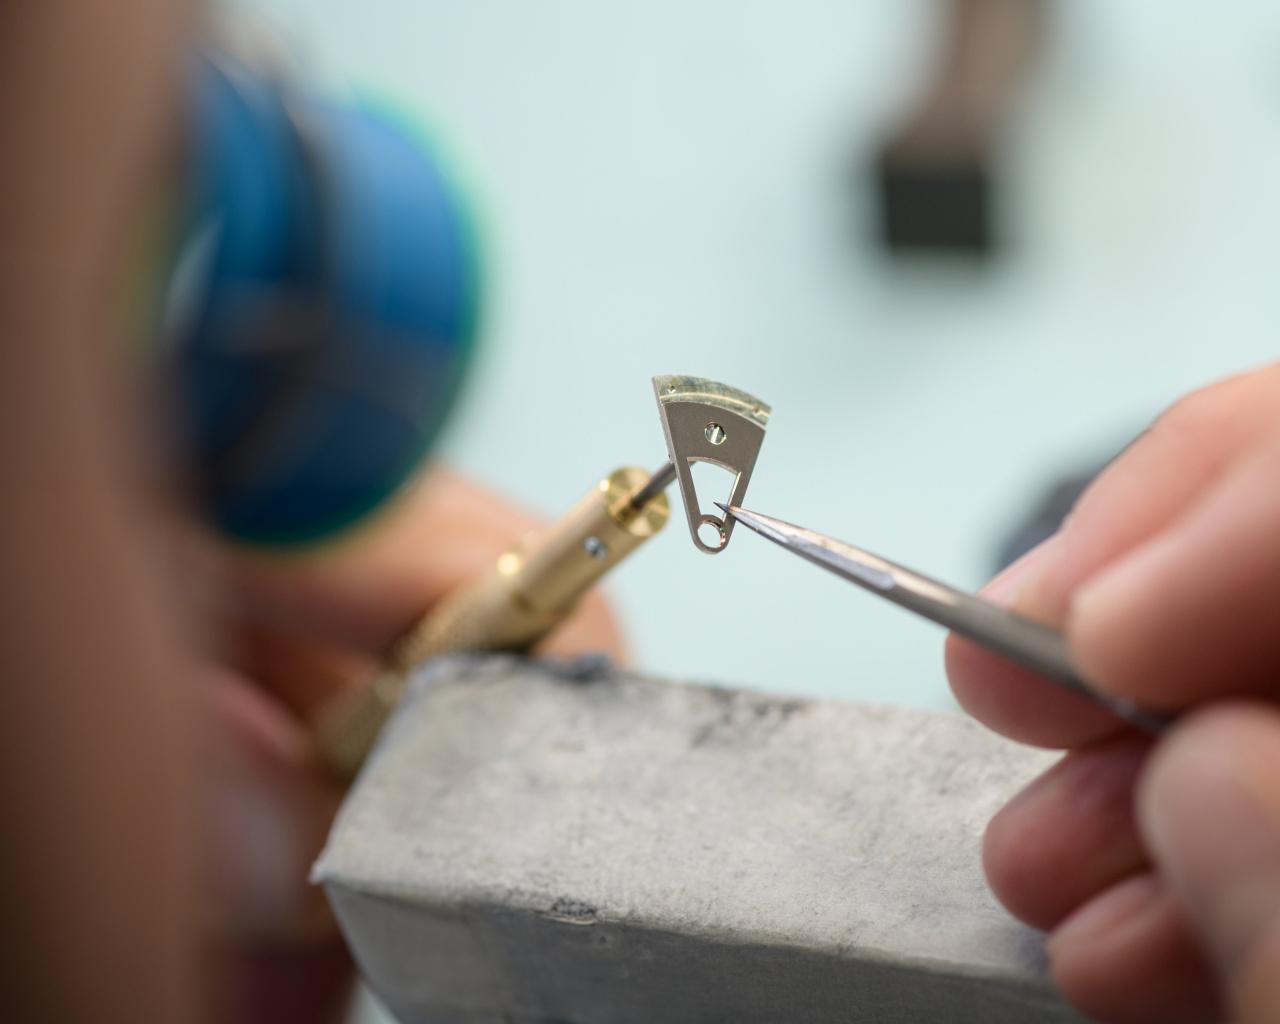 Výroba hodinek Greubel Forsey Hand Made 1 zabrala 6000 hodin práce